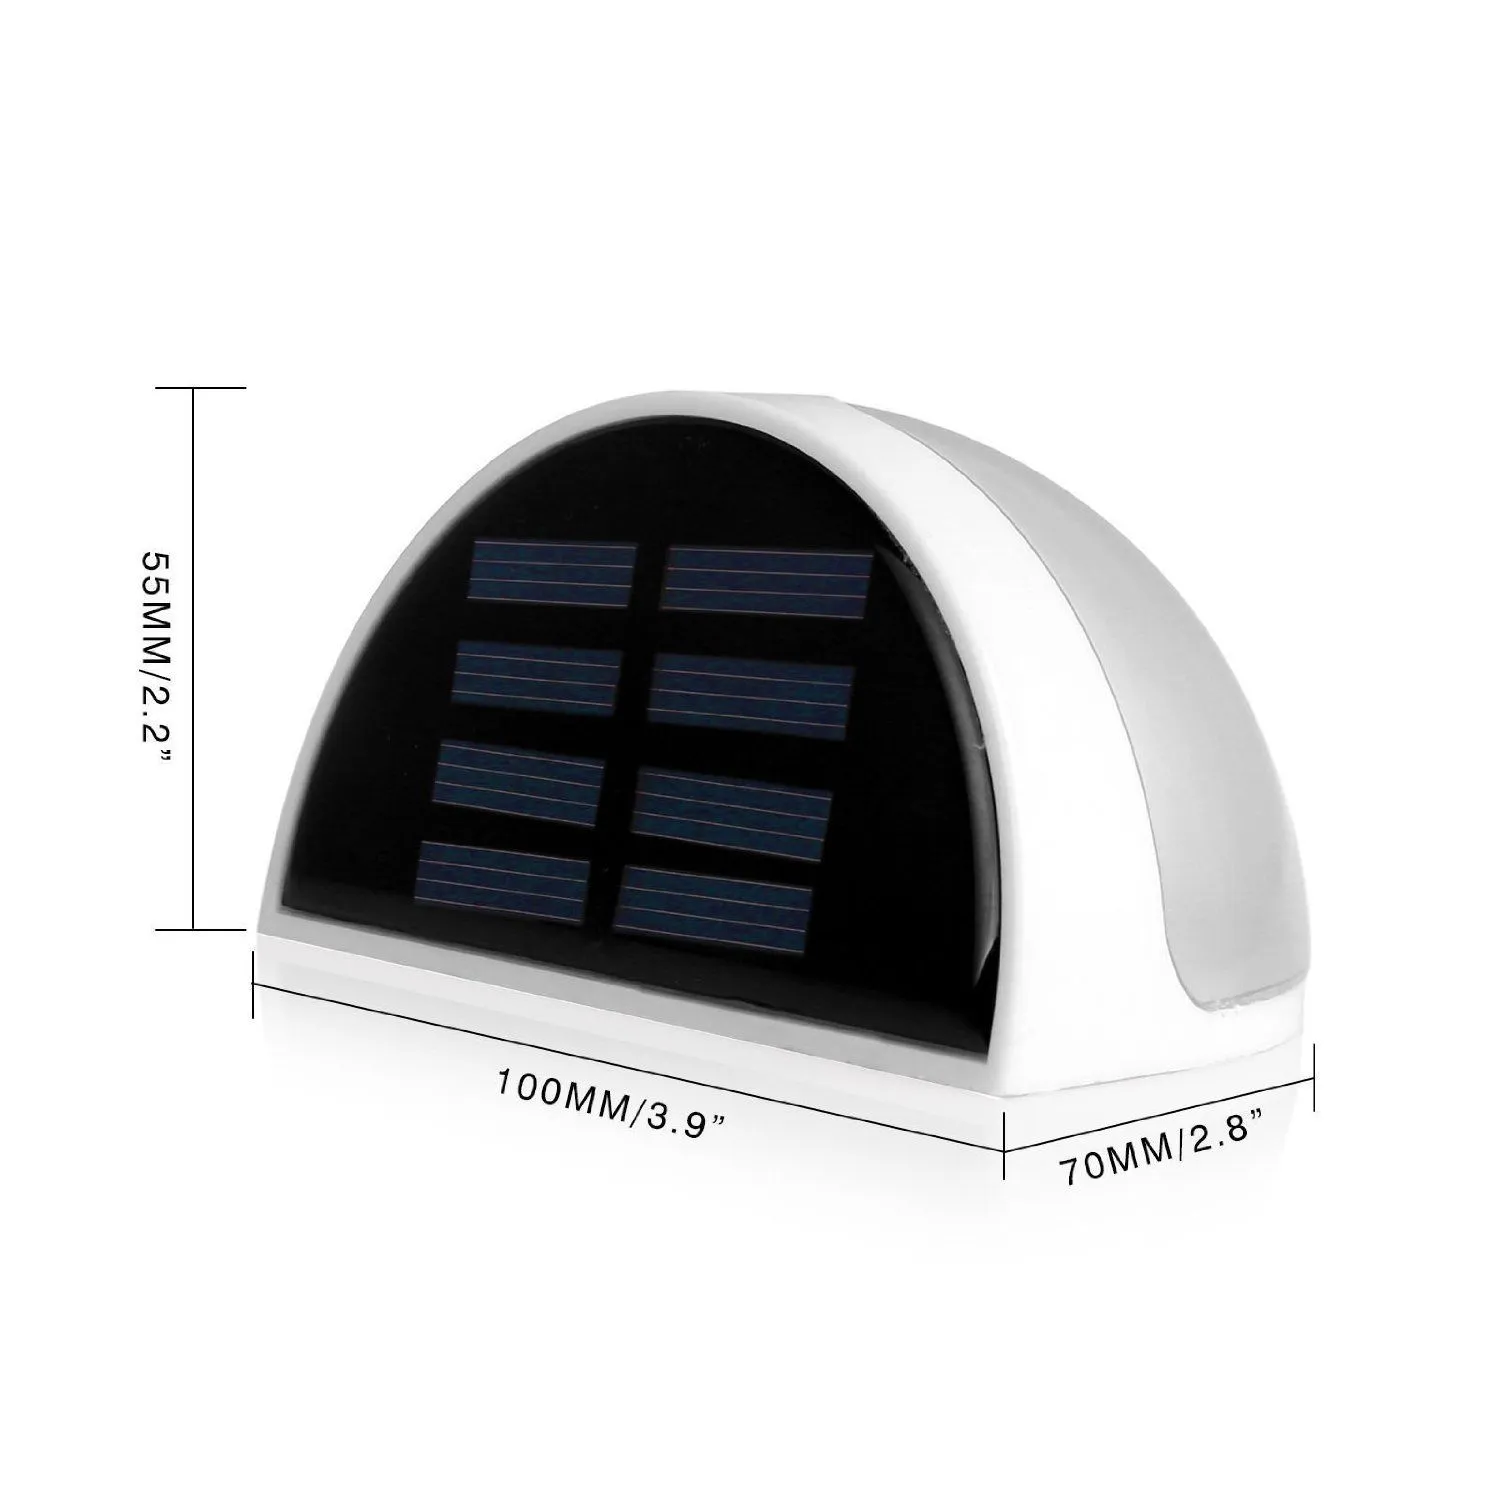 Outdoor Wandlampen Zonne-energie 6 LED Licht Sensor Omheining Dakgoot Tuinlichten Thuis Trap Waterdichte Bol